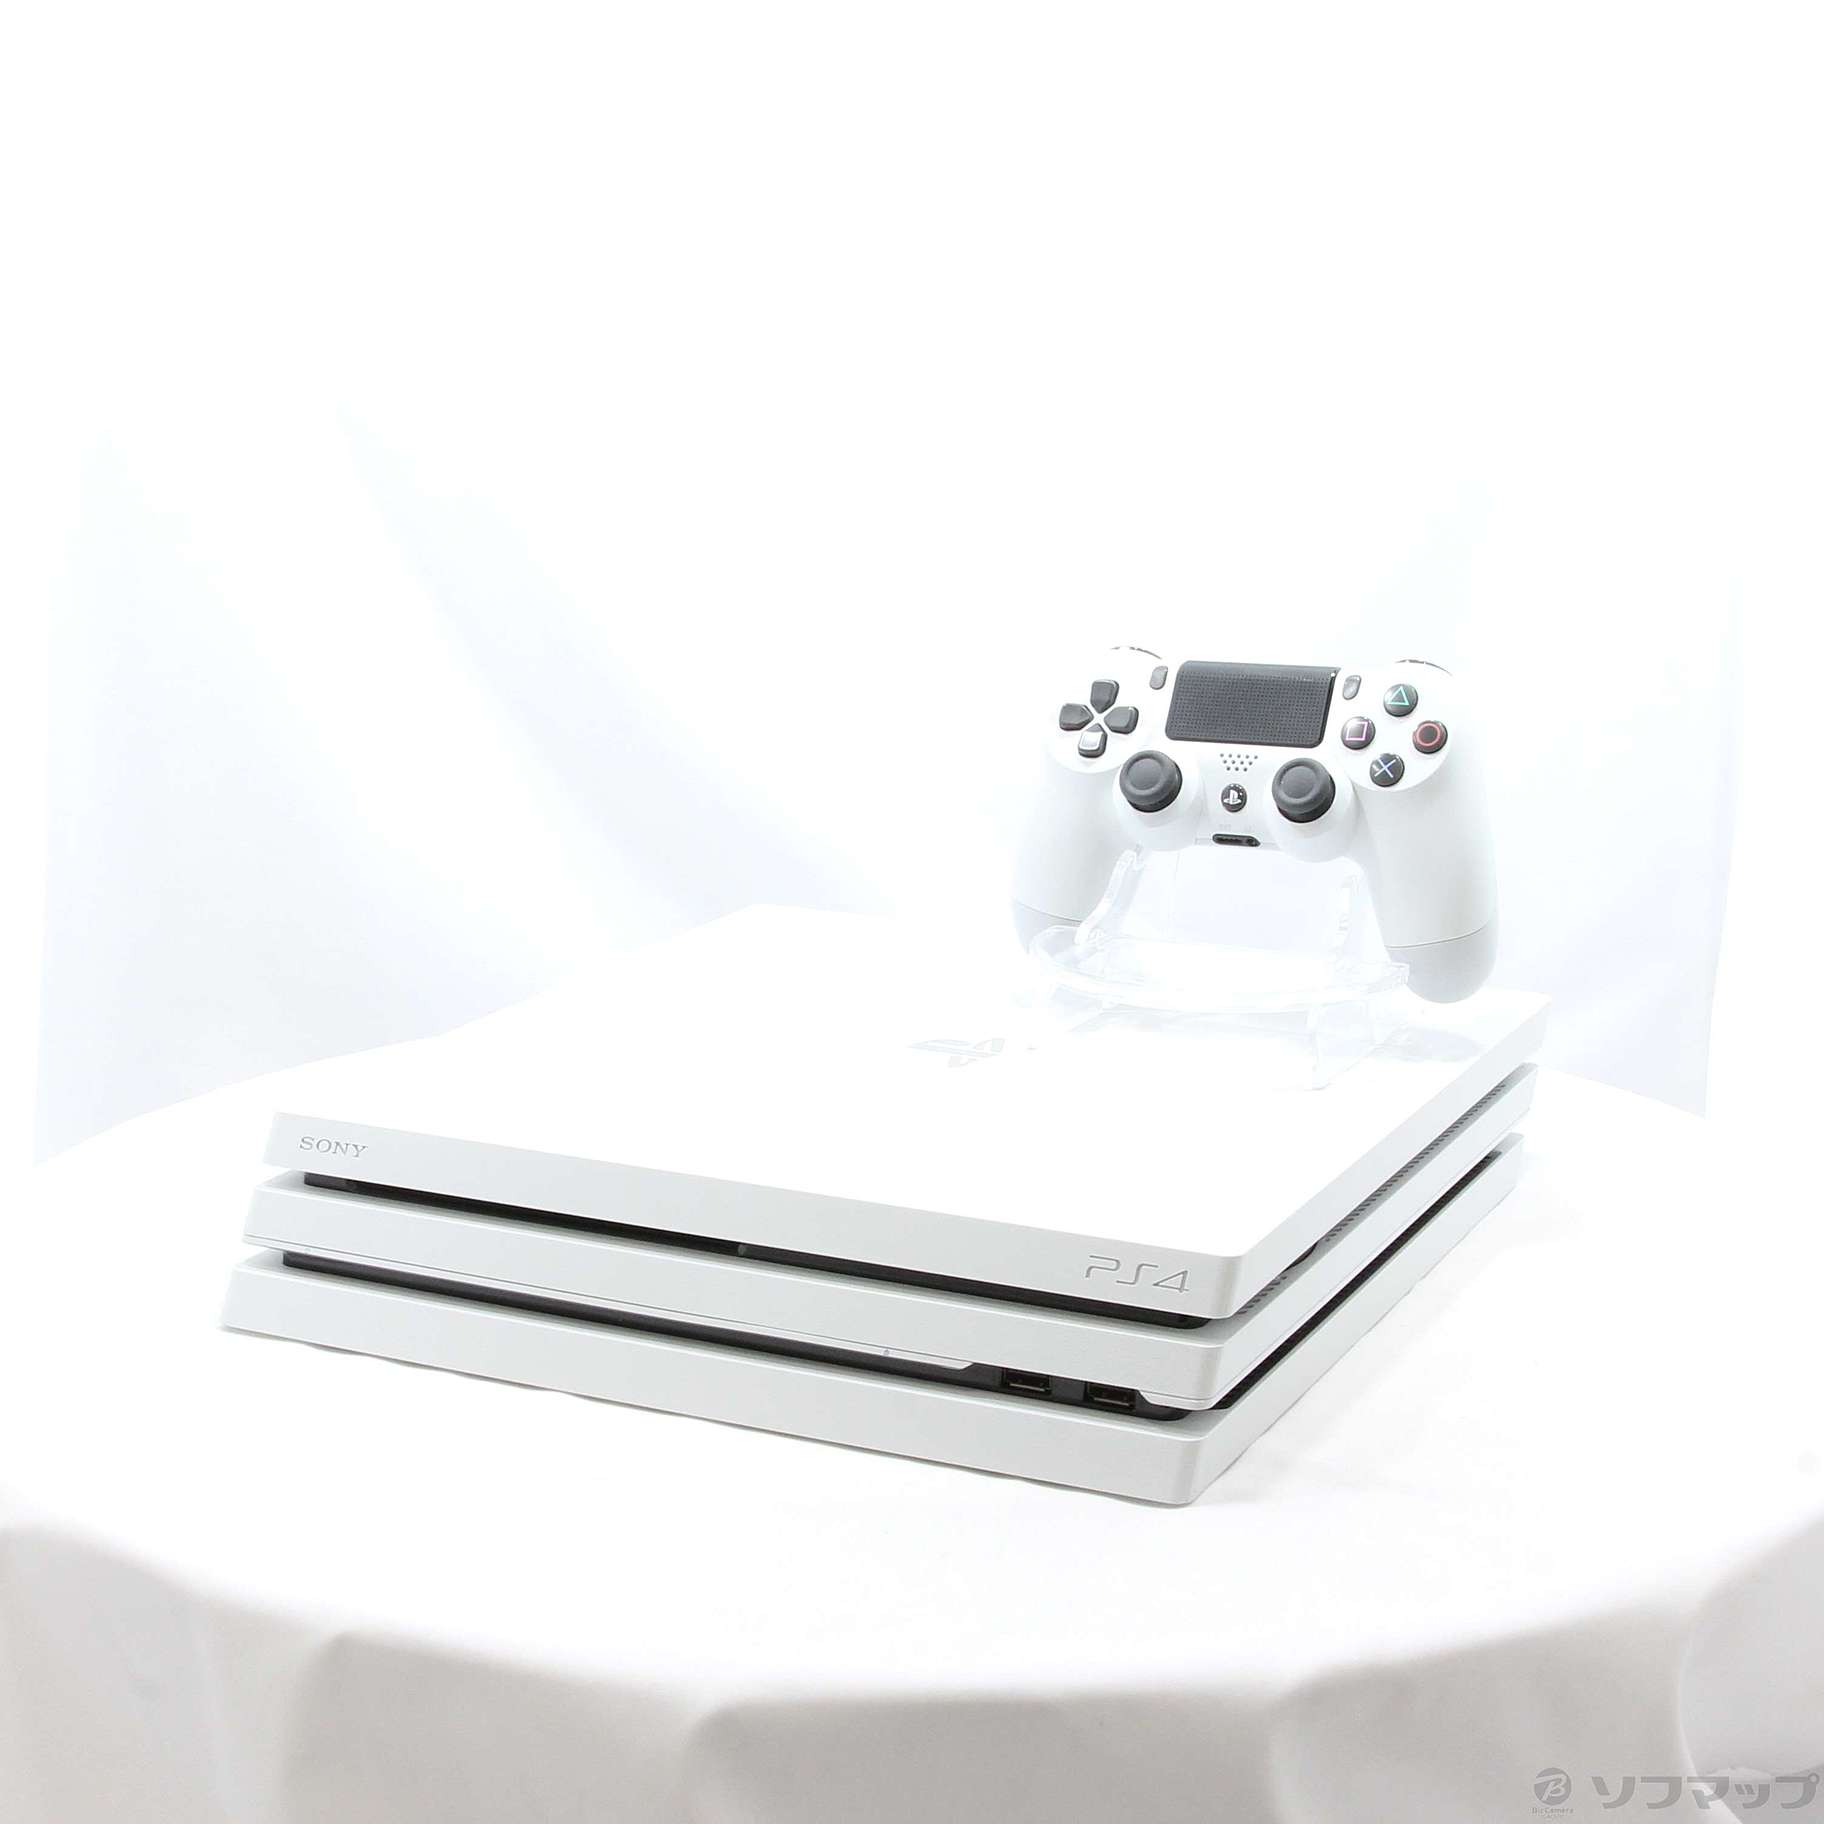 (PS4本体) PlayStation4 Pro グレイシャー・ホワイト 1TB